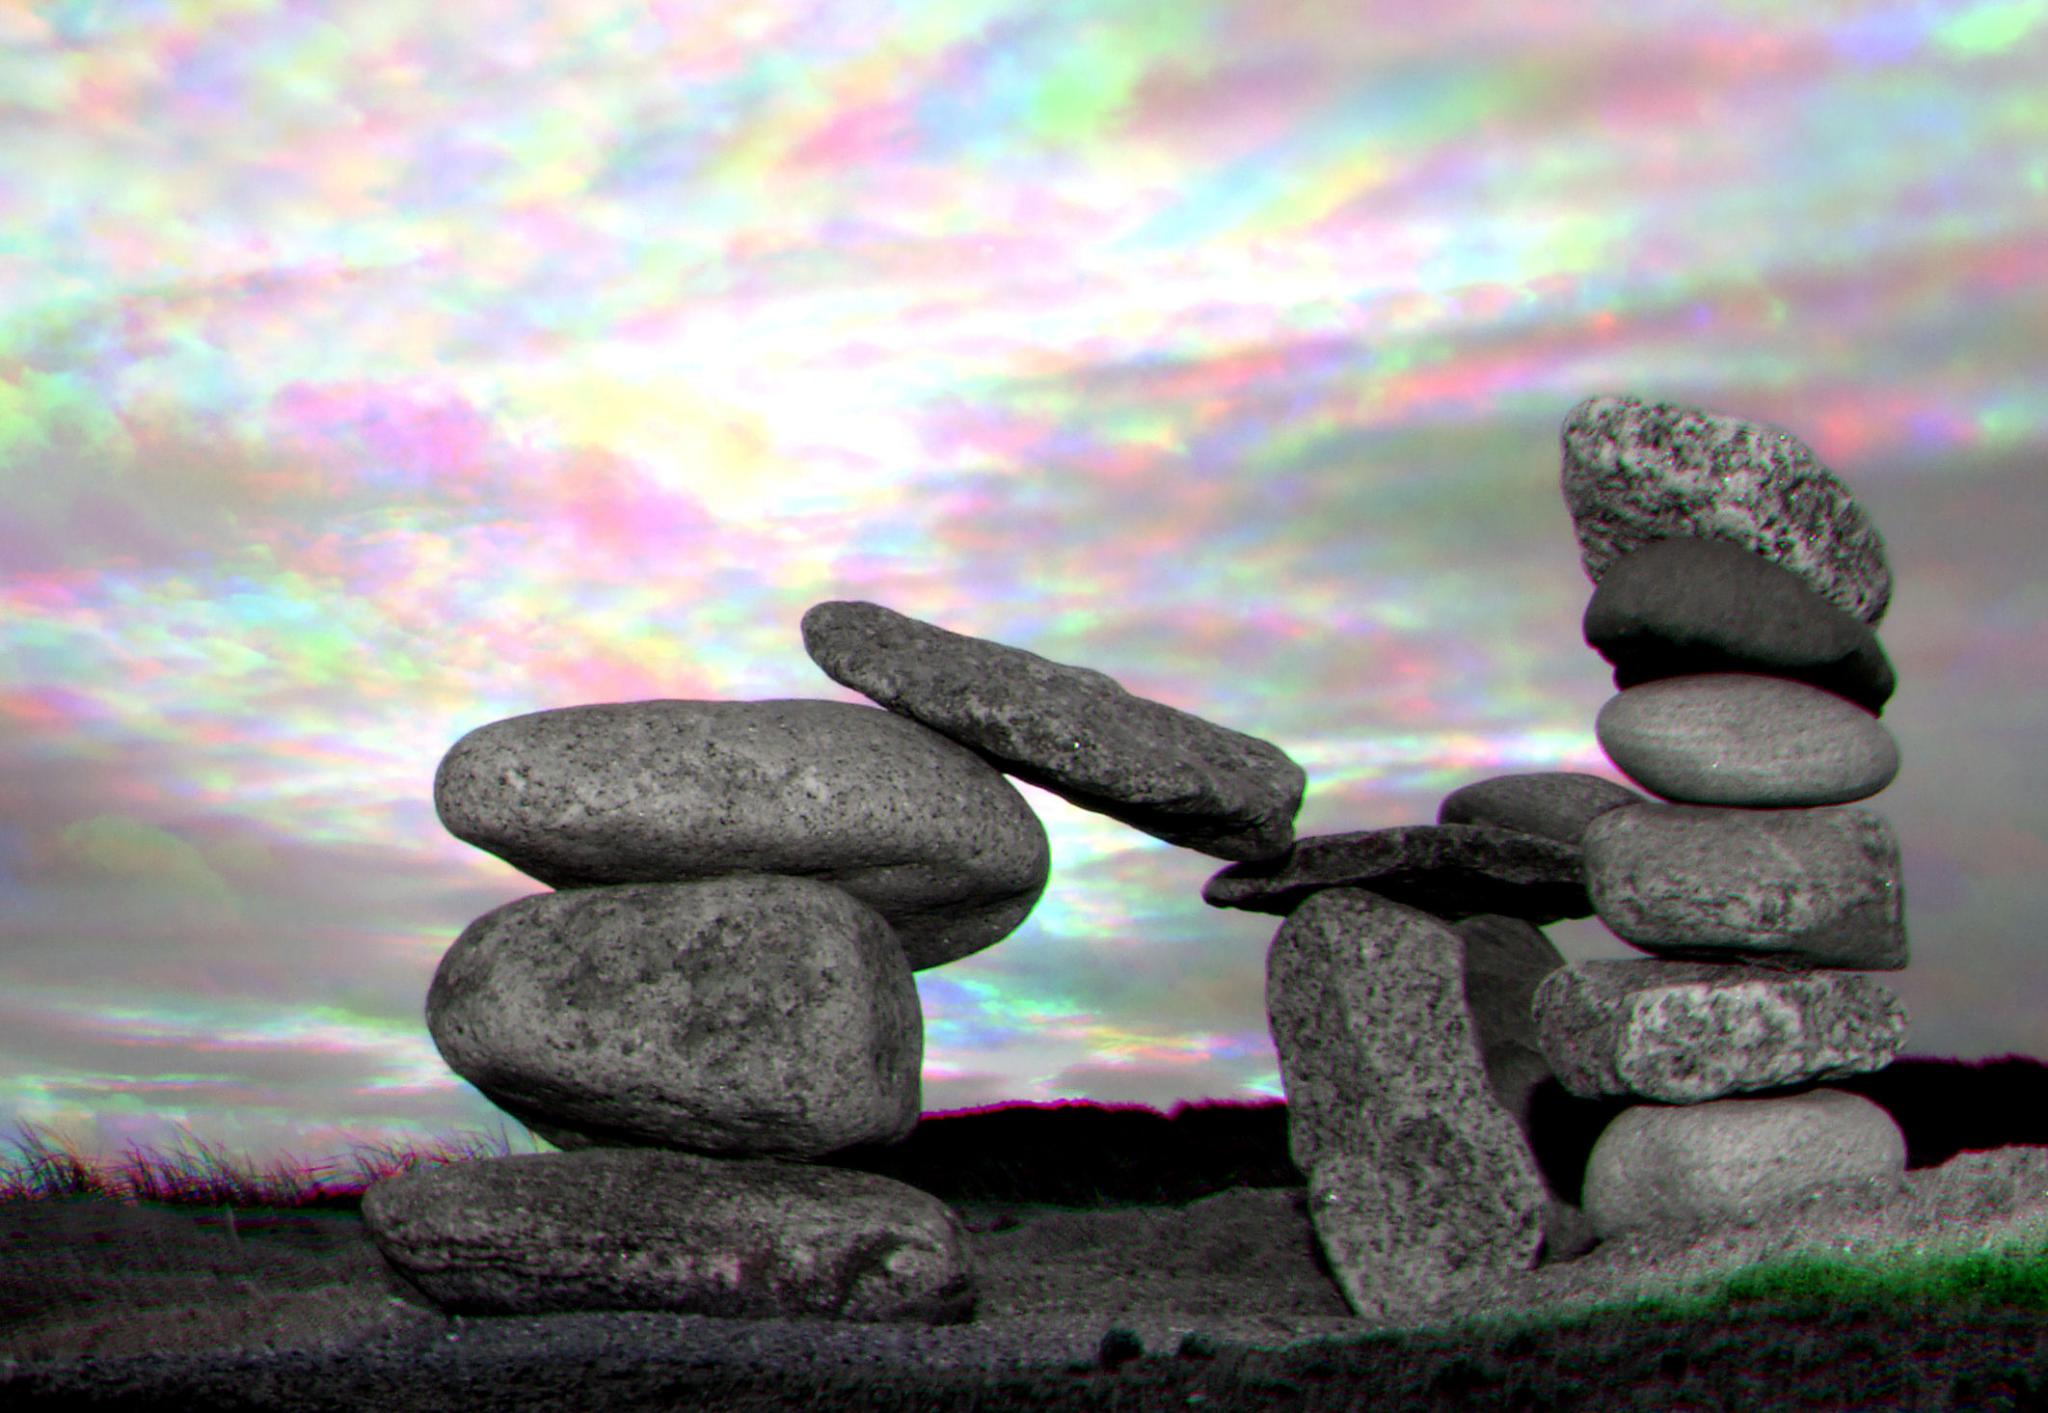 Photograph: Balanced Pebbles Harris Shutter Effect